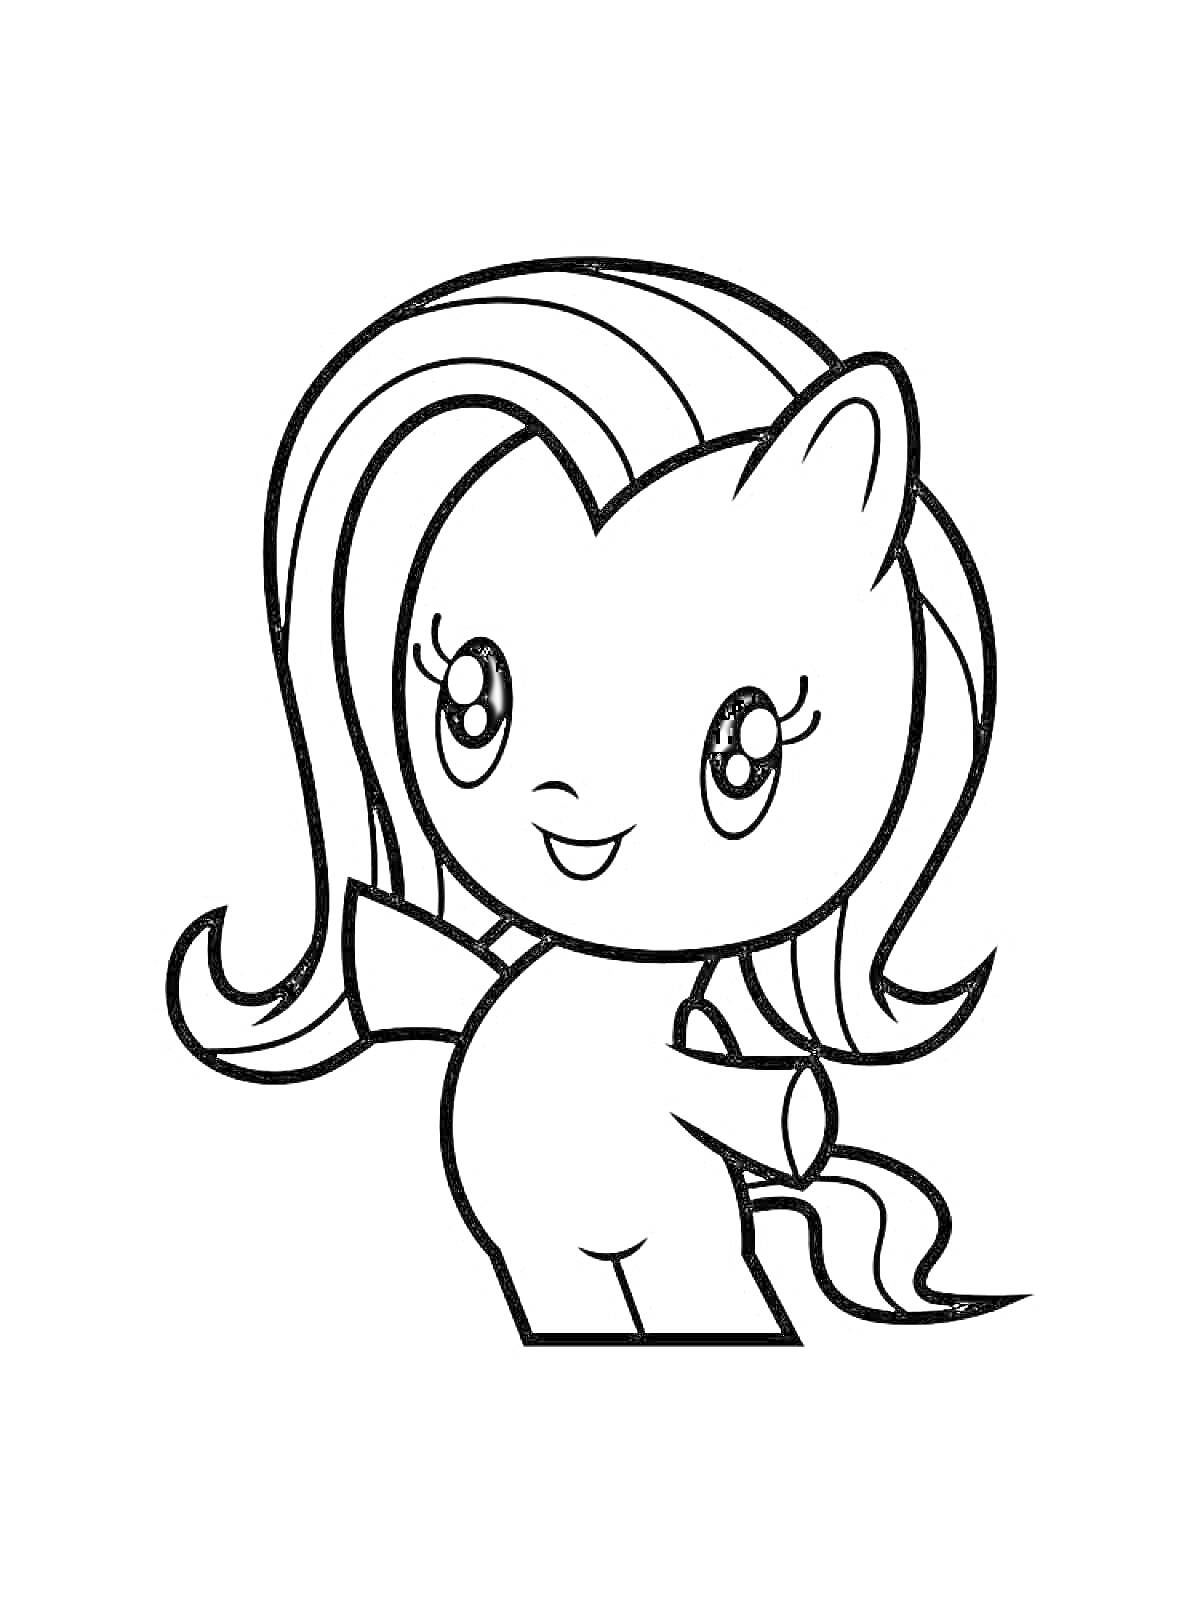 Раскраска Маленькая пони с длинными волосами и большими глазами